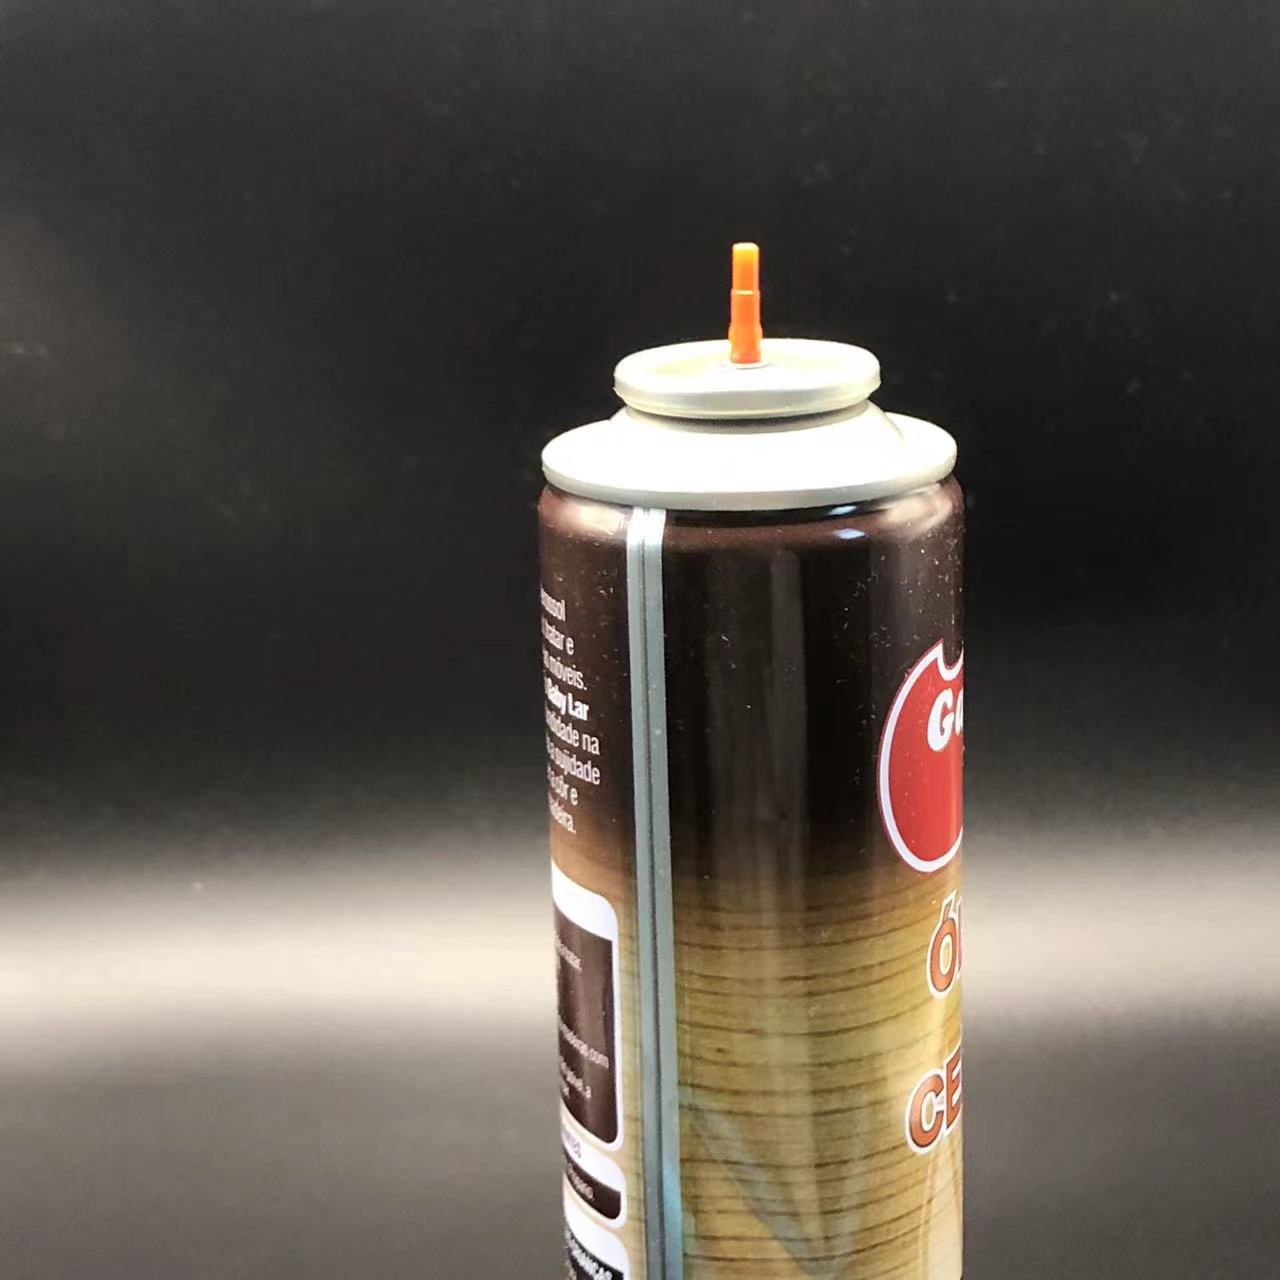 Adaptadores coloridos para la válvula de recarga más ligera de gas butano Personalice su experiencia de recarga